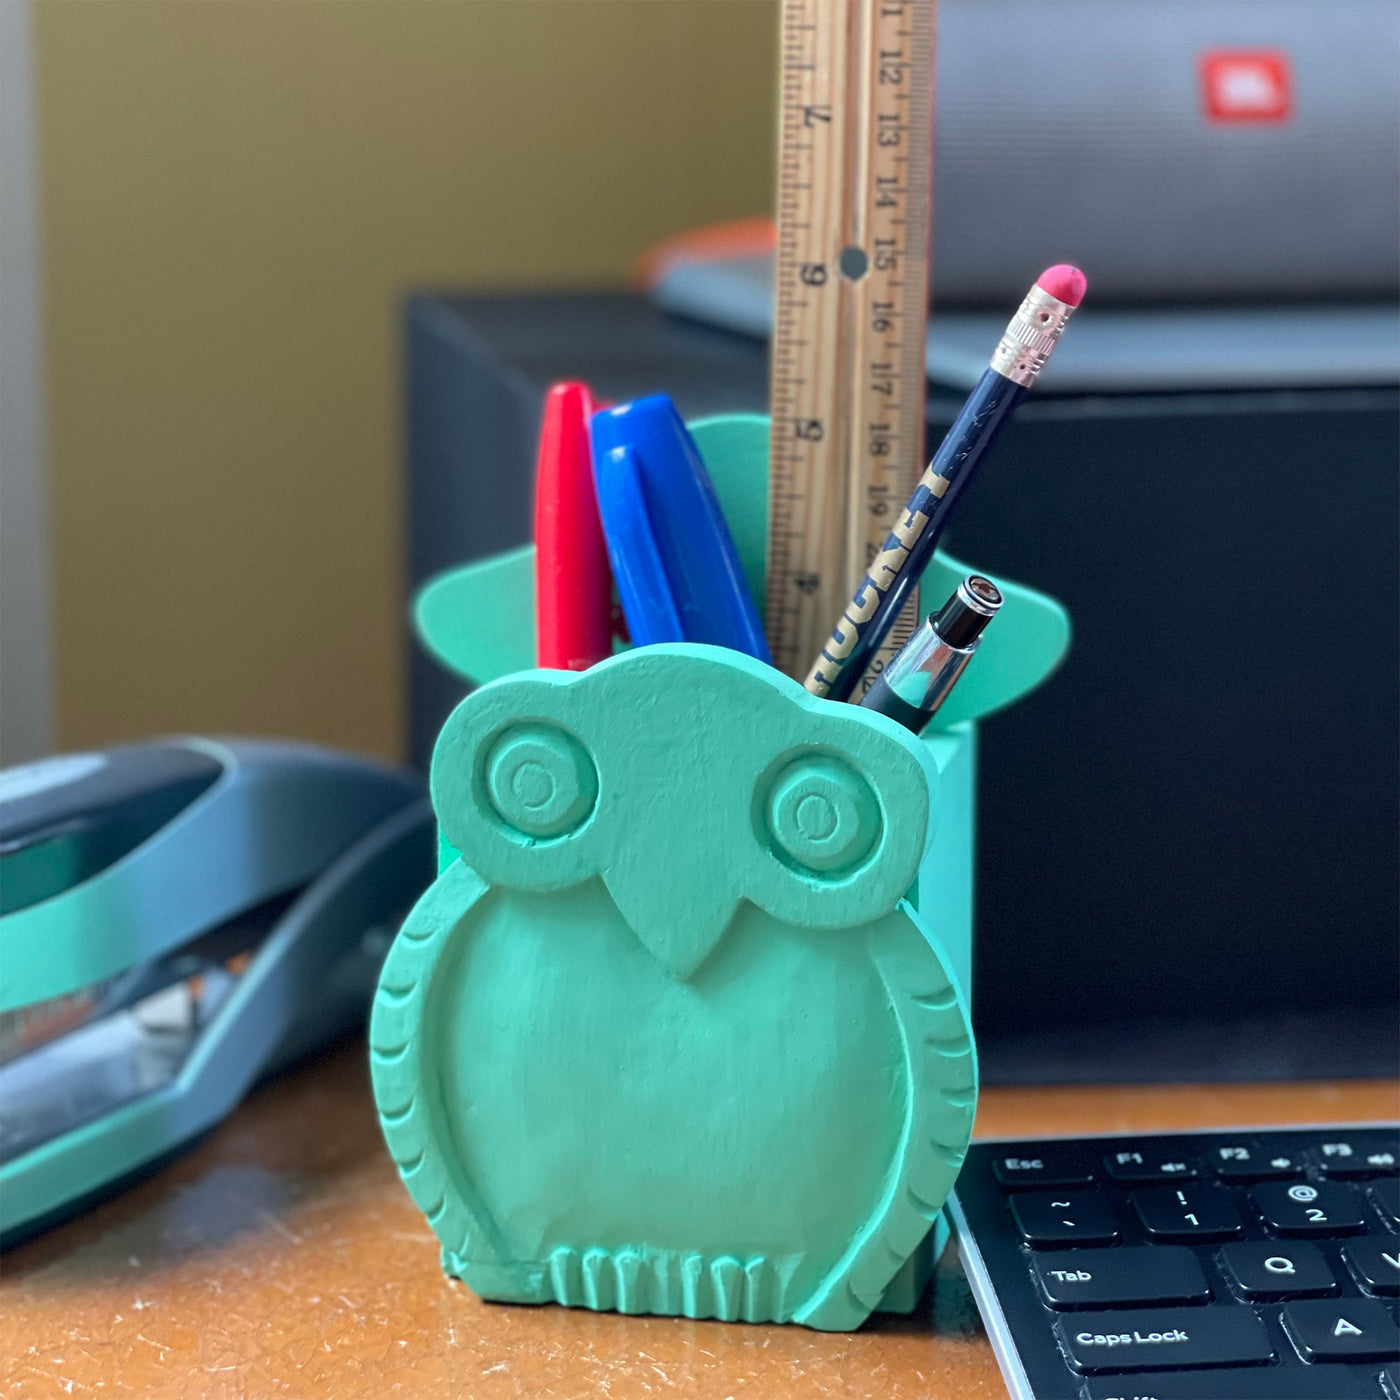 Mr. Owl Eyeglass Stand Pen Holder Combo